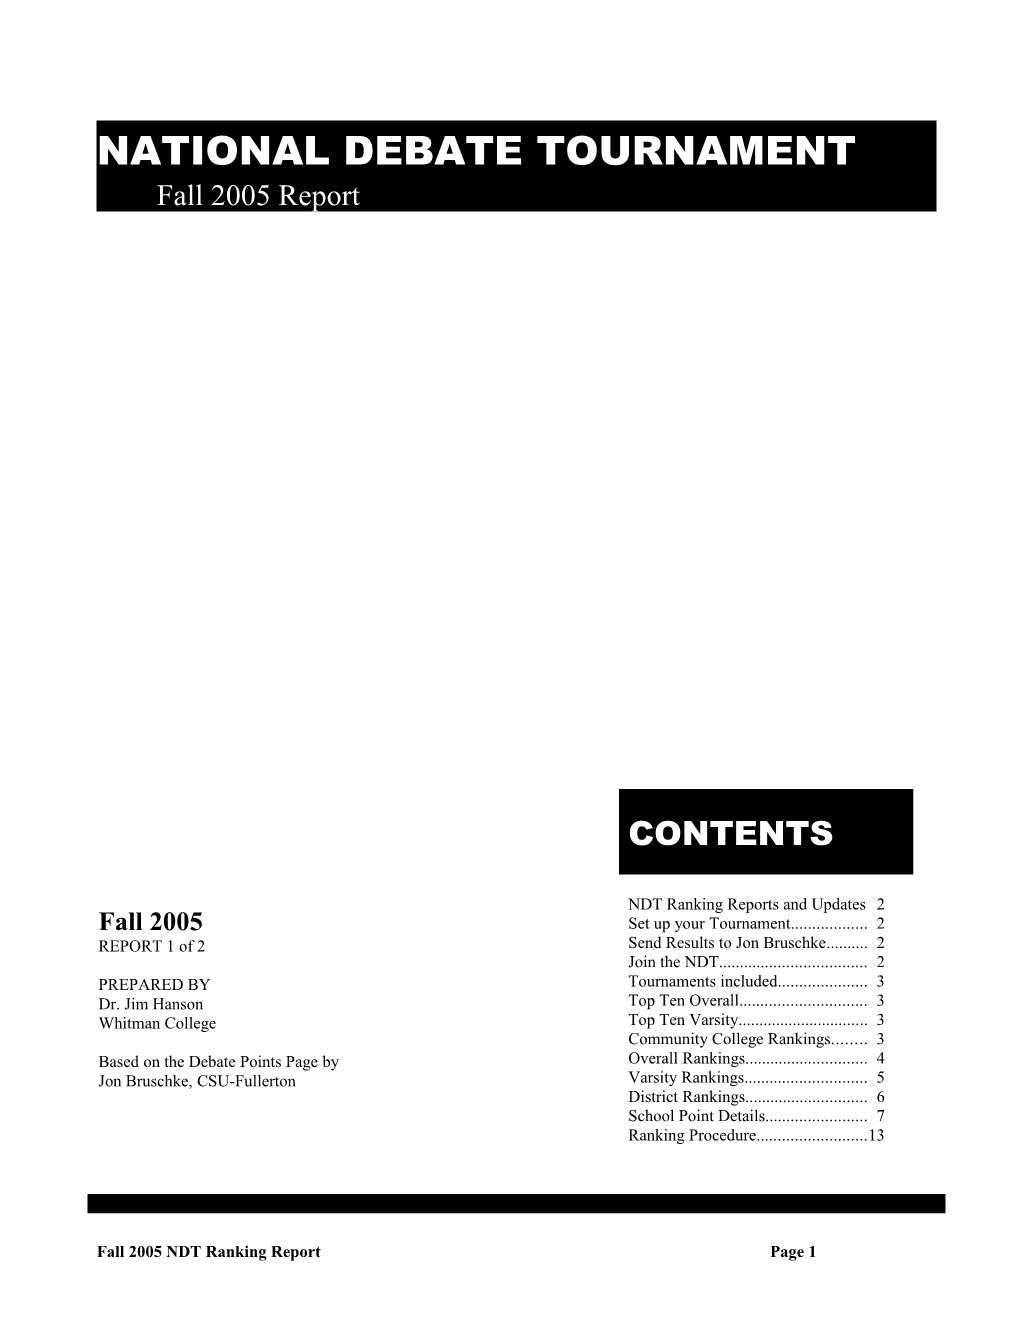 National Debate Tournament